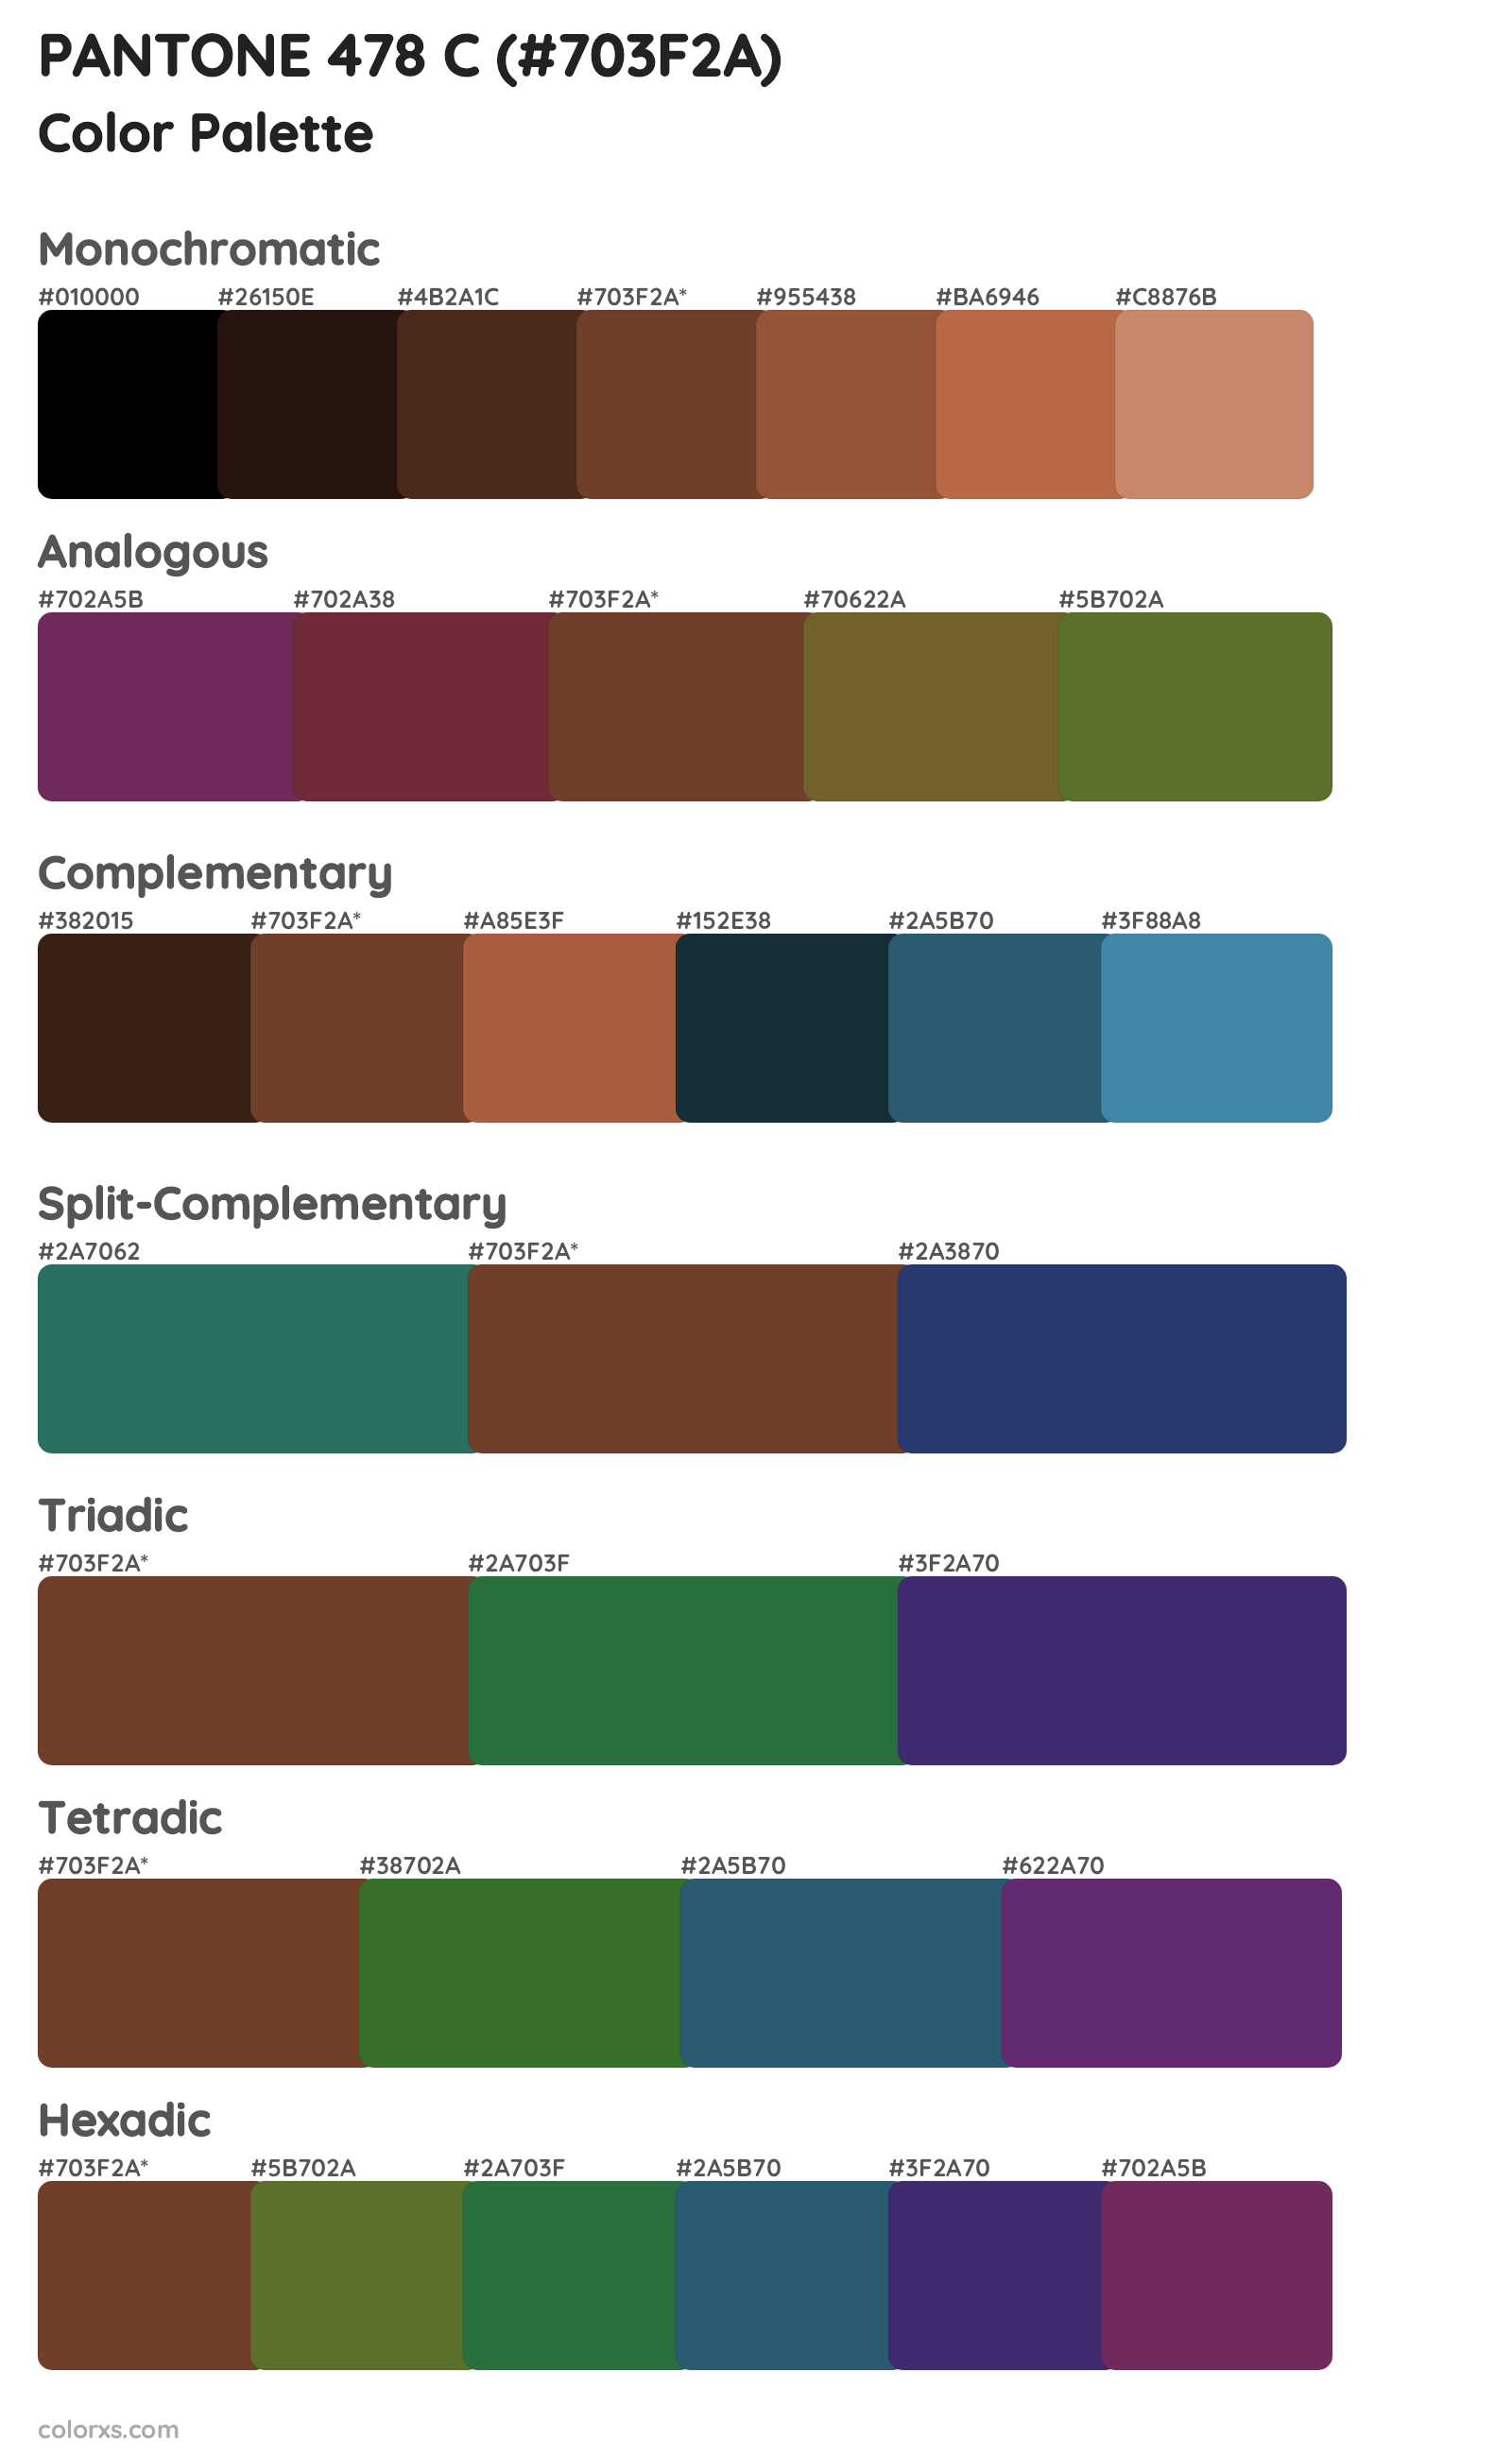 PANTONE 478 C Color Scheme Palettes